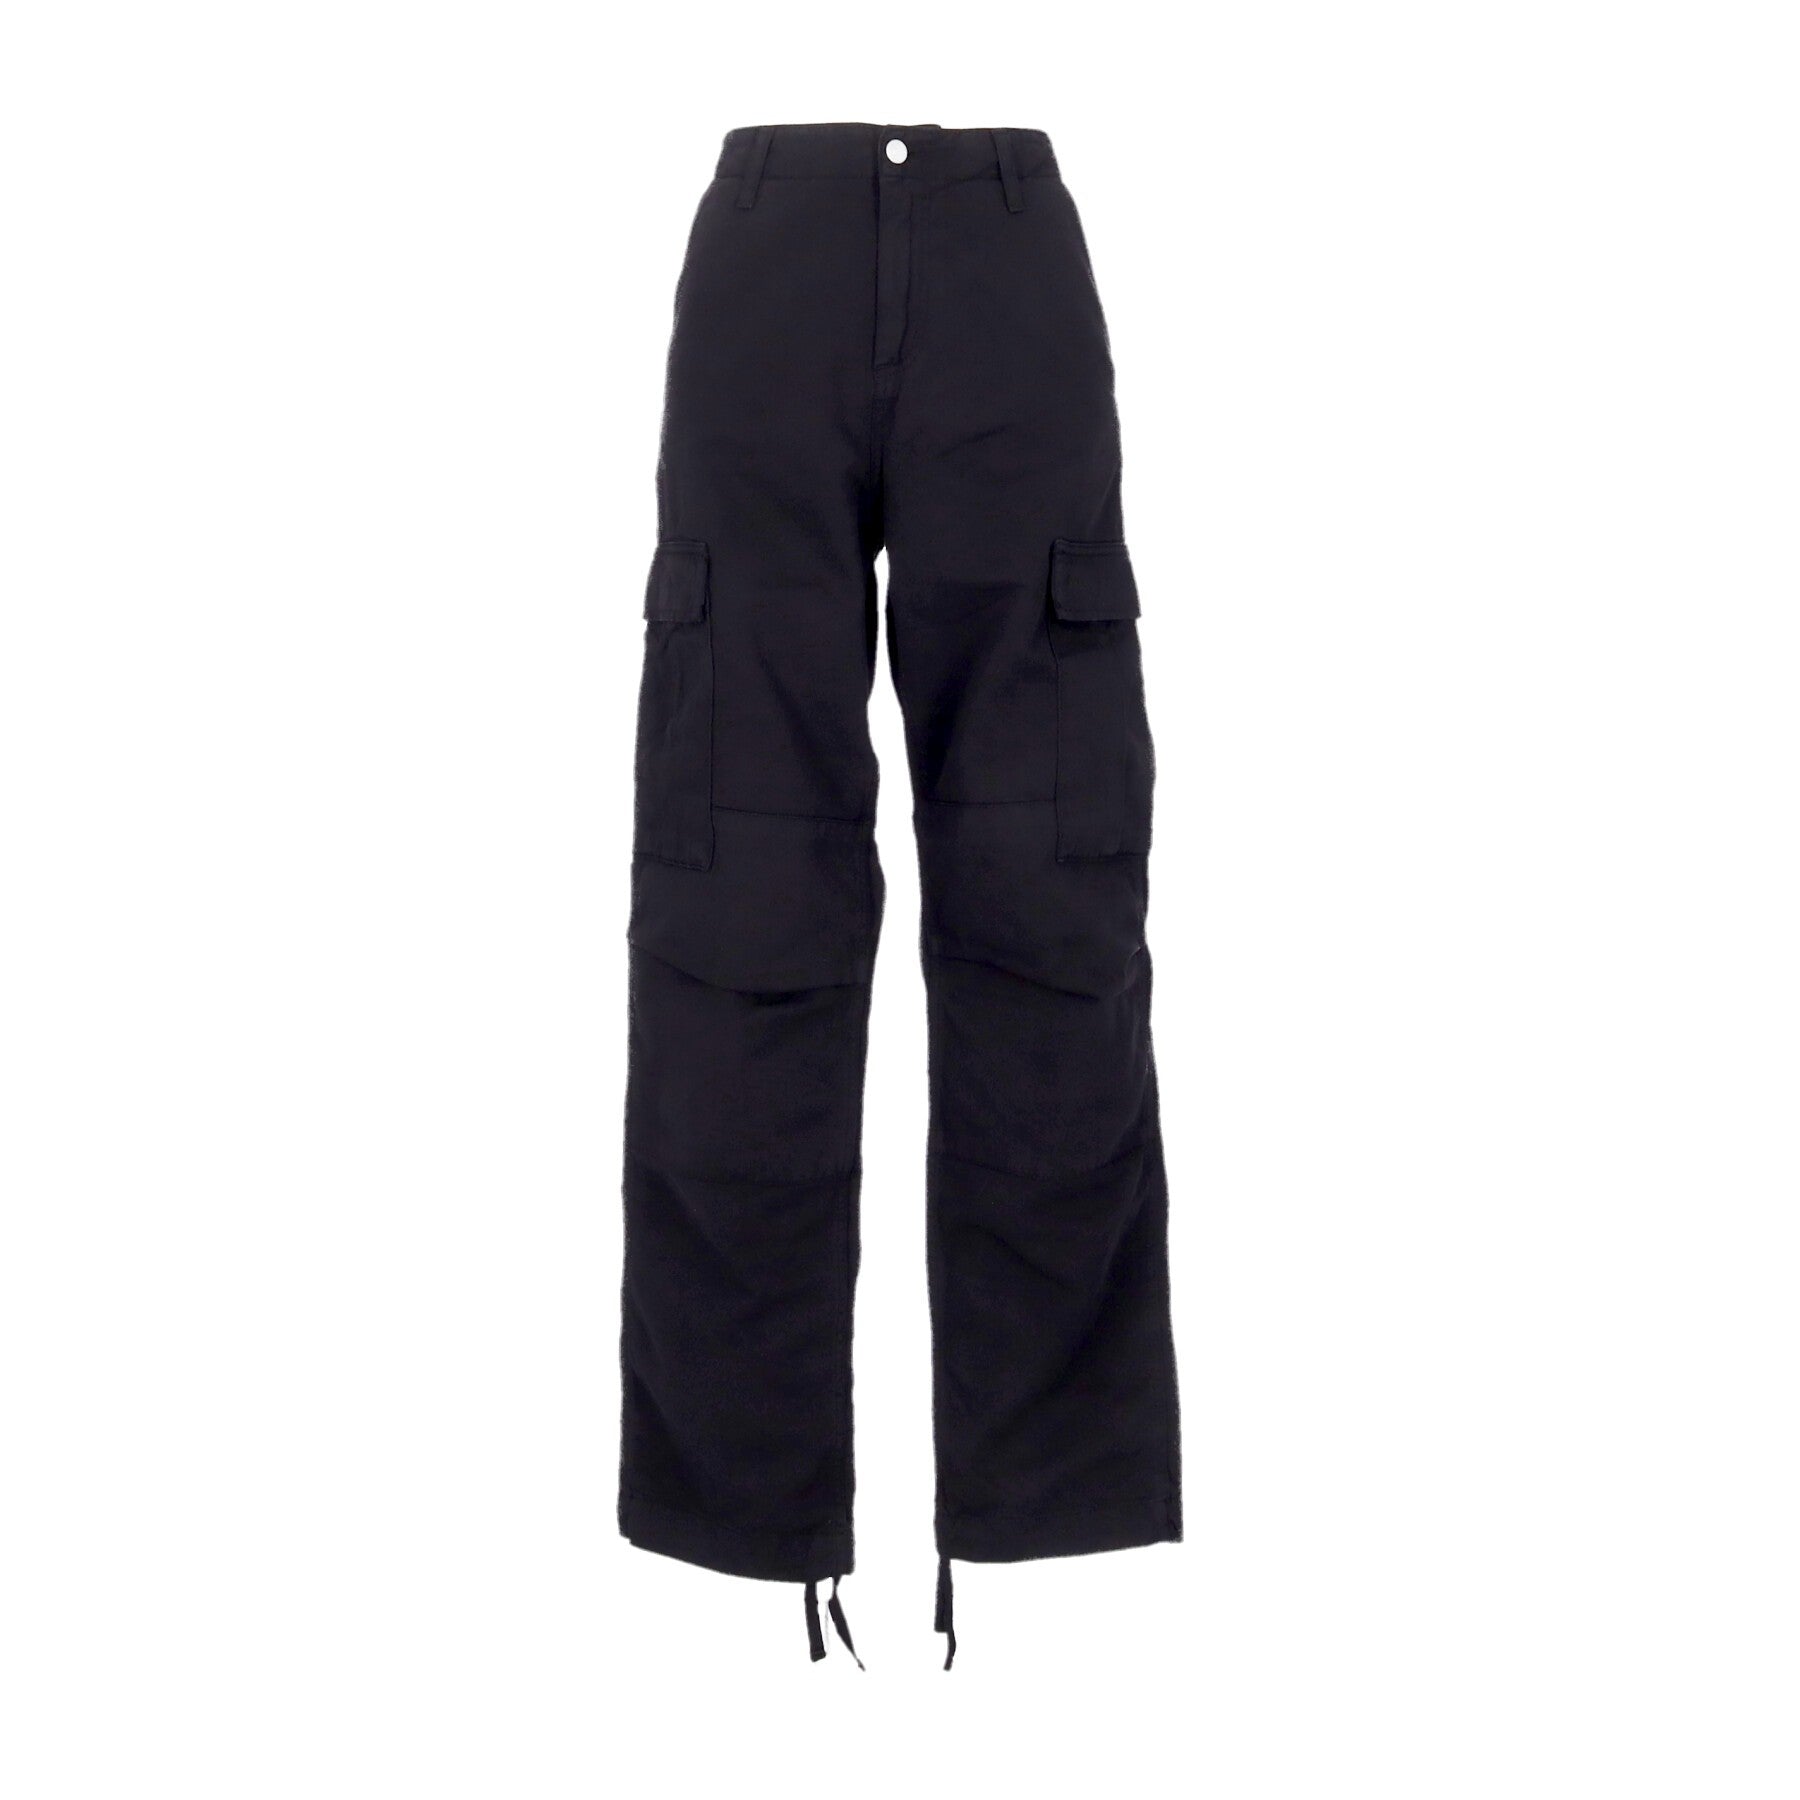 Pantalone Lungo Uomo Regular Cargo Pant Black Garment Dyed